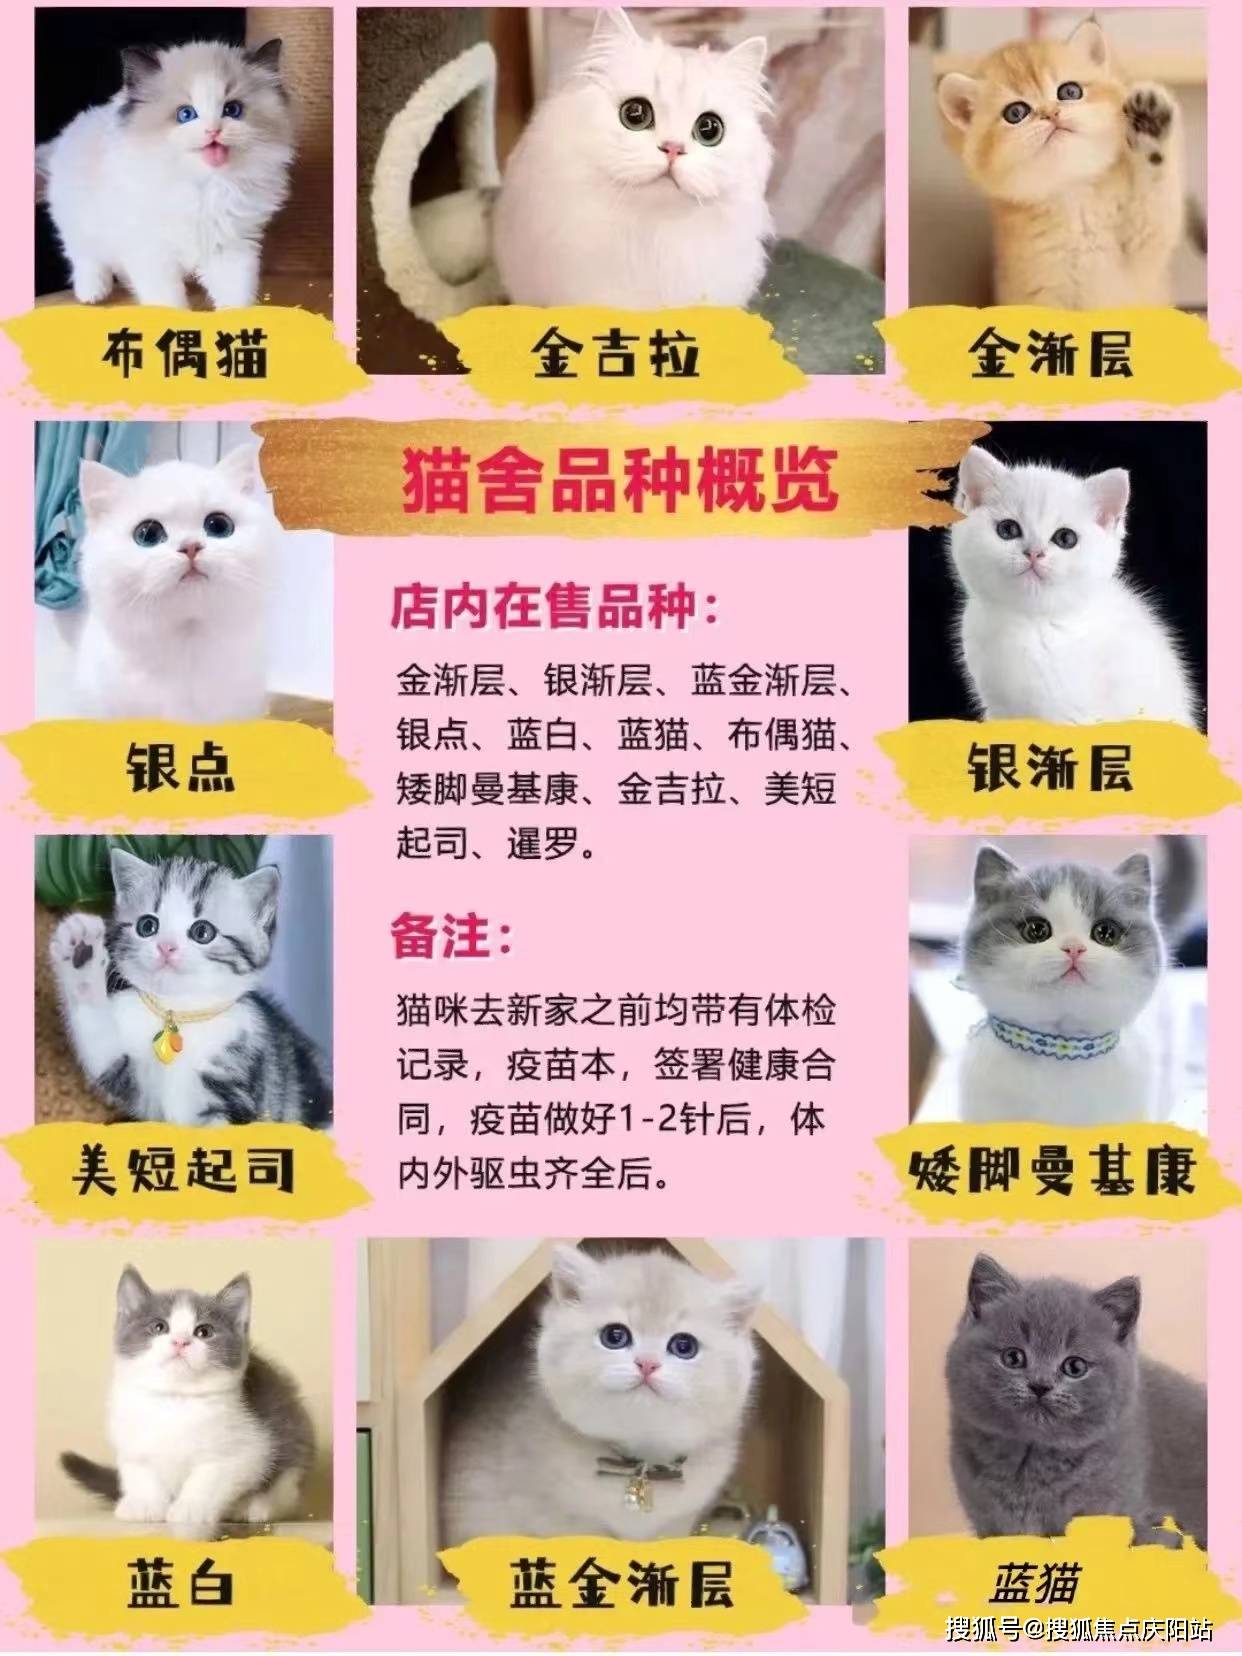 长沙买宠物首页网站(长沙)哪里有便宜的猫狗市场丨哪里有便宜的猫狗